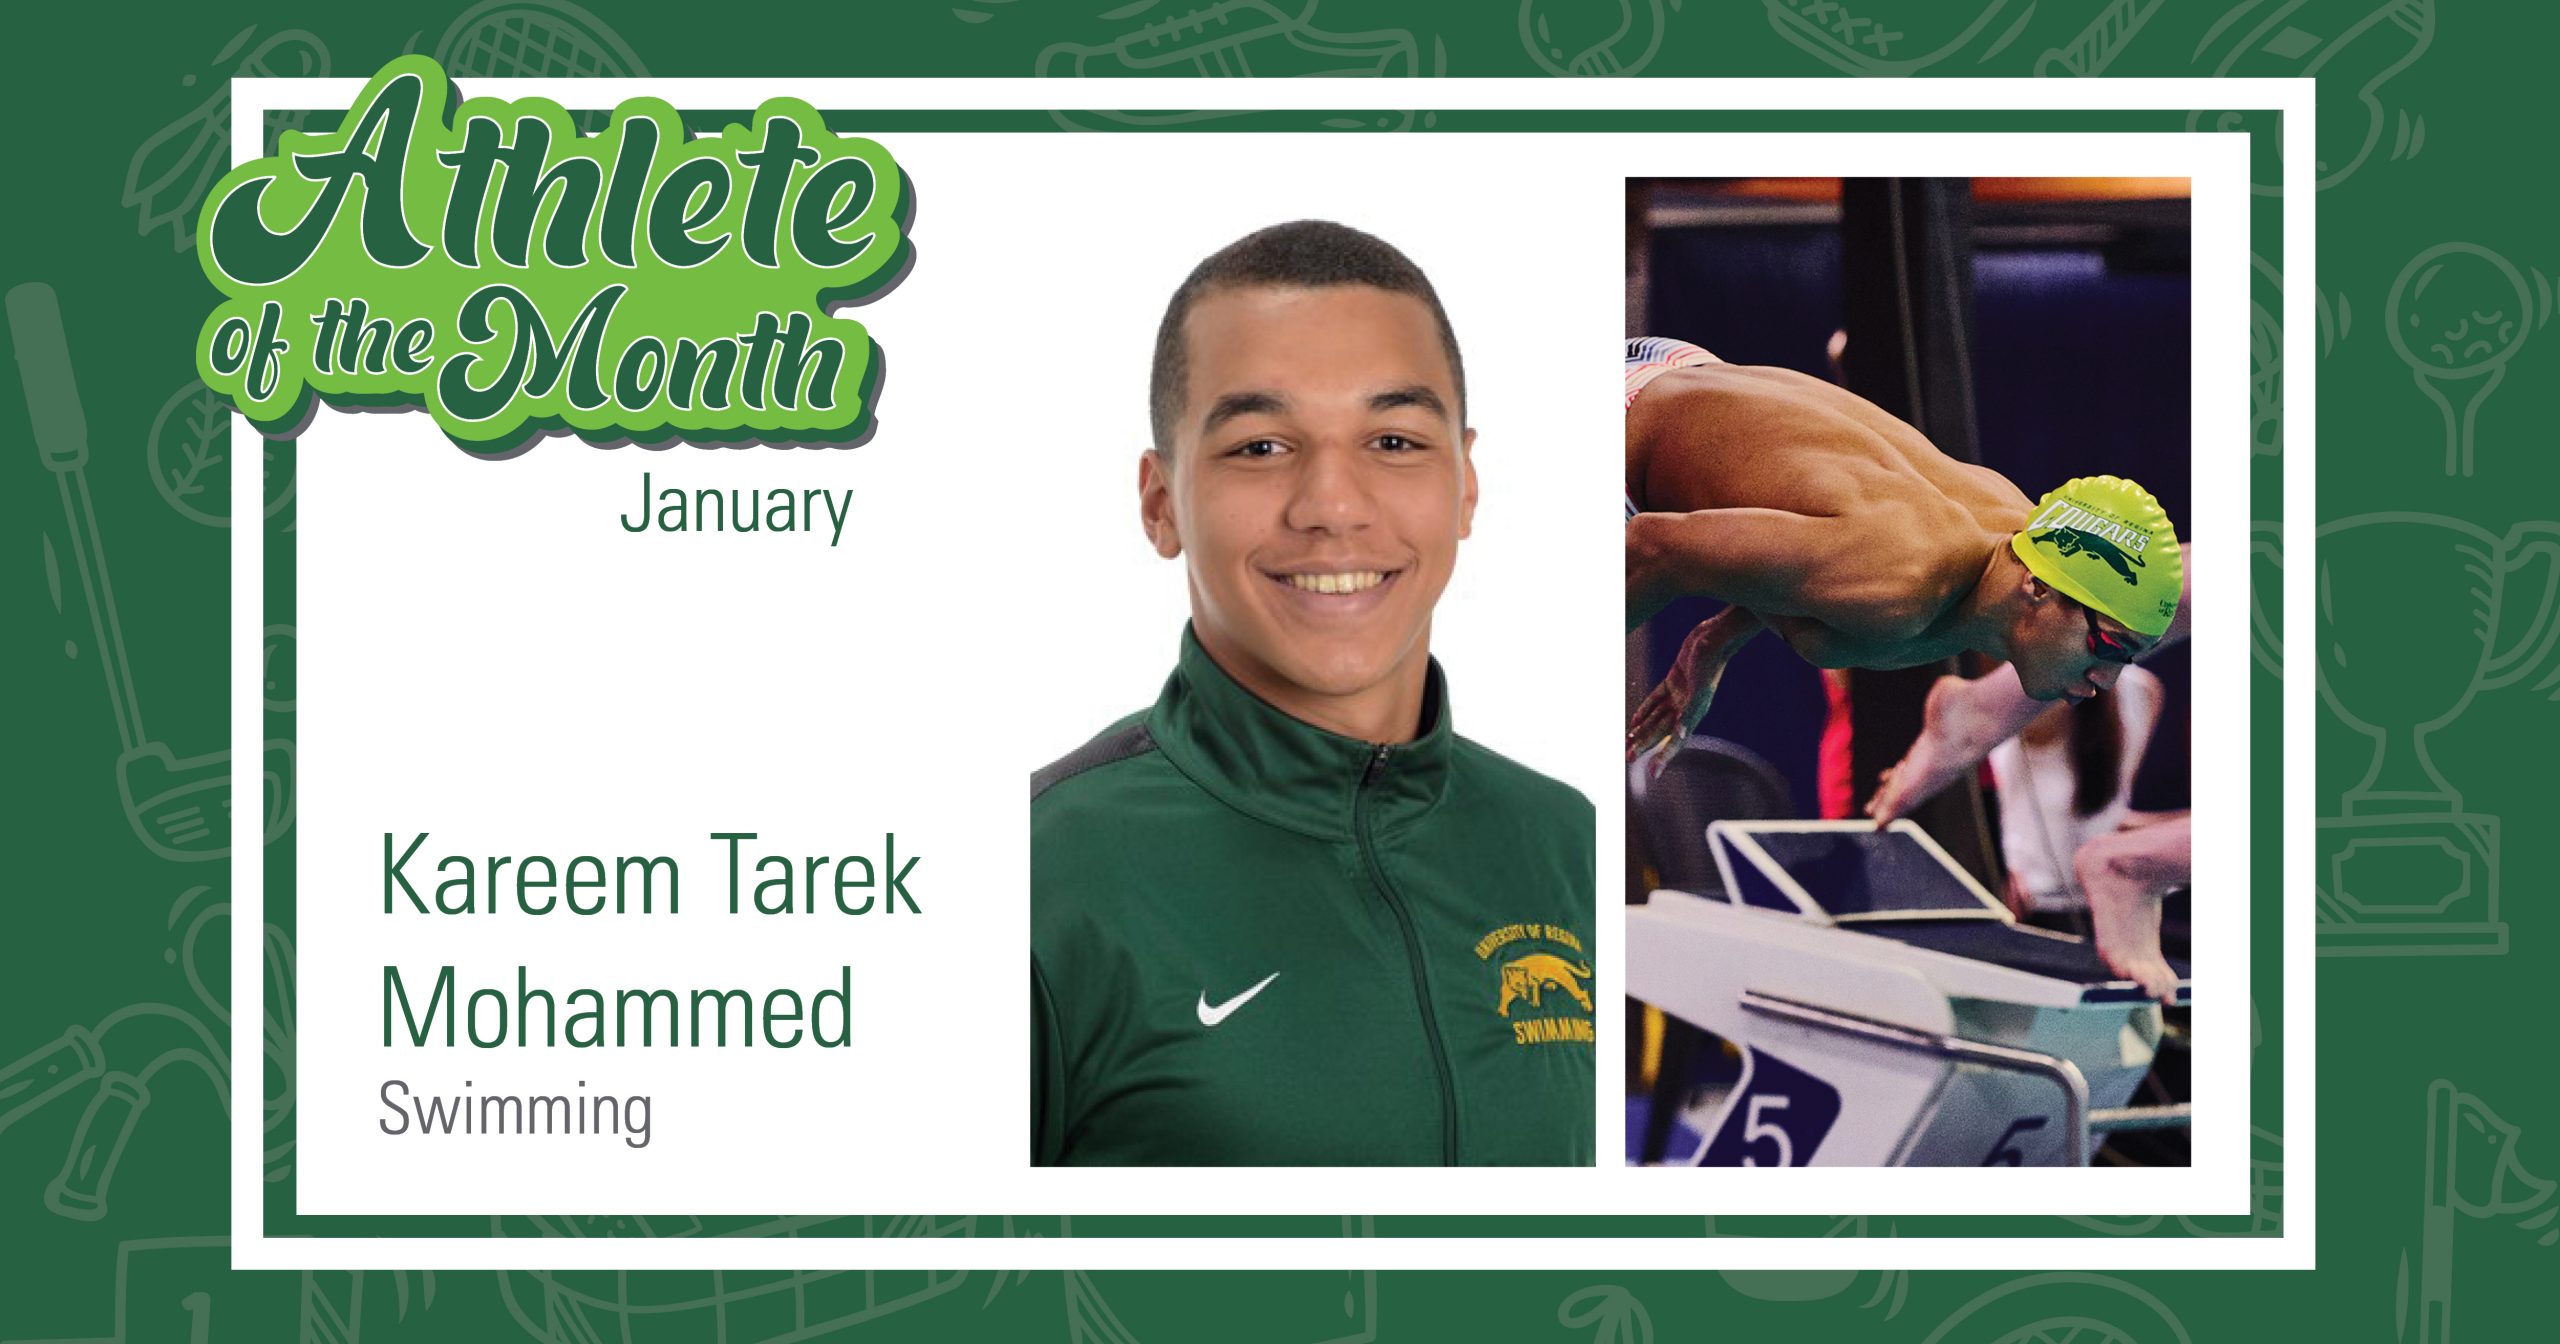 Regina-based swimmer Kareem Tarek Mohammed earns January Athlete of the Month